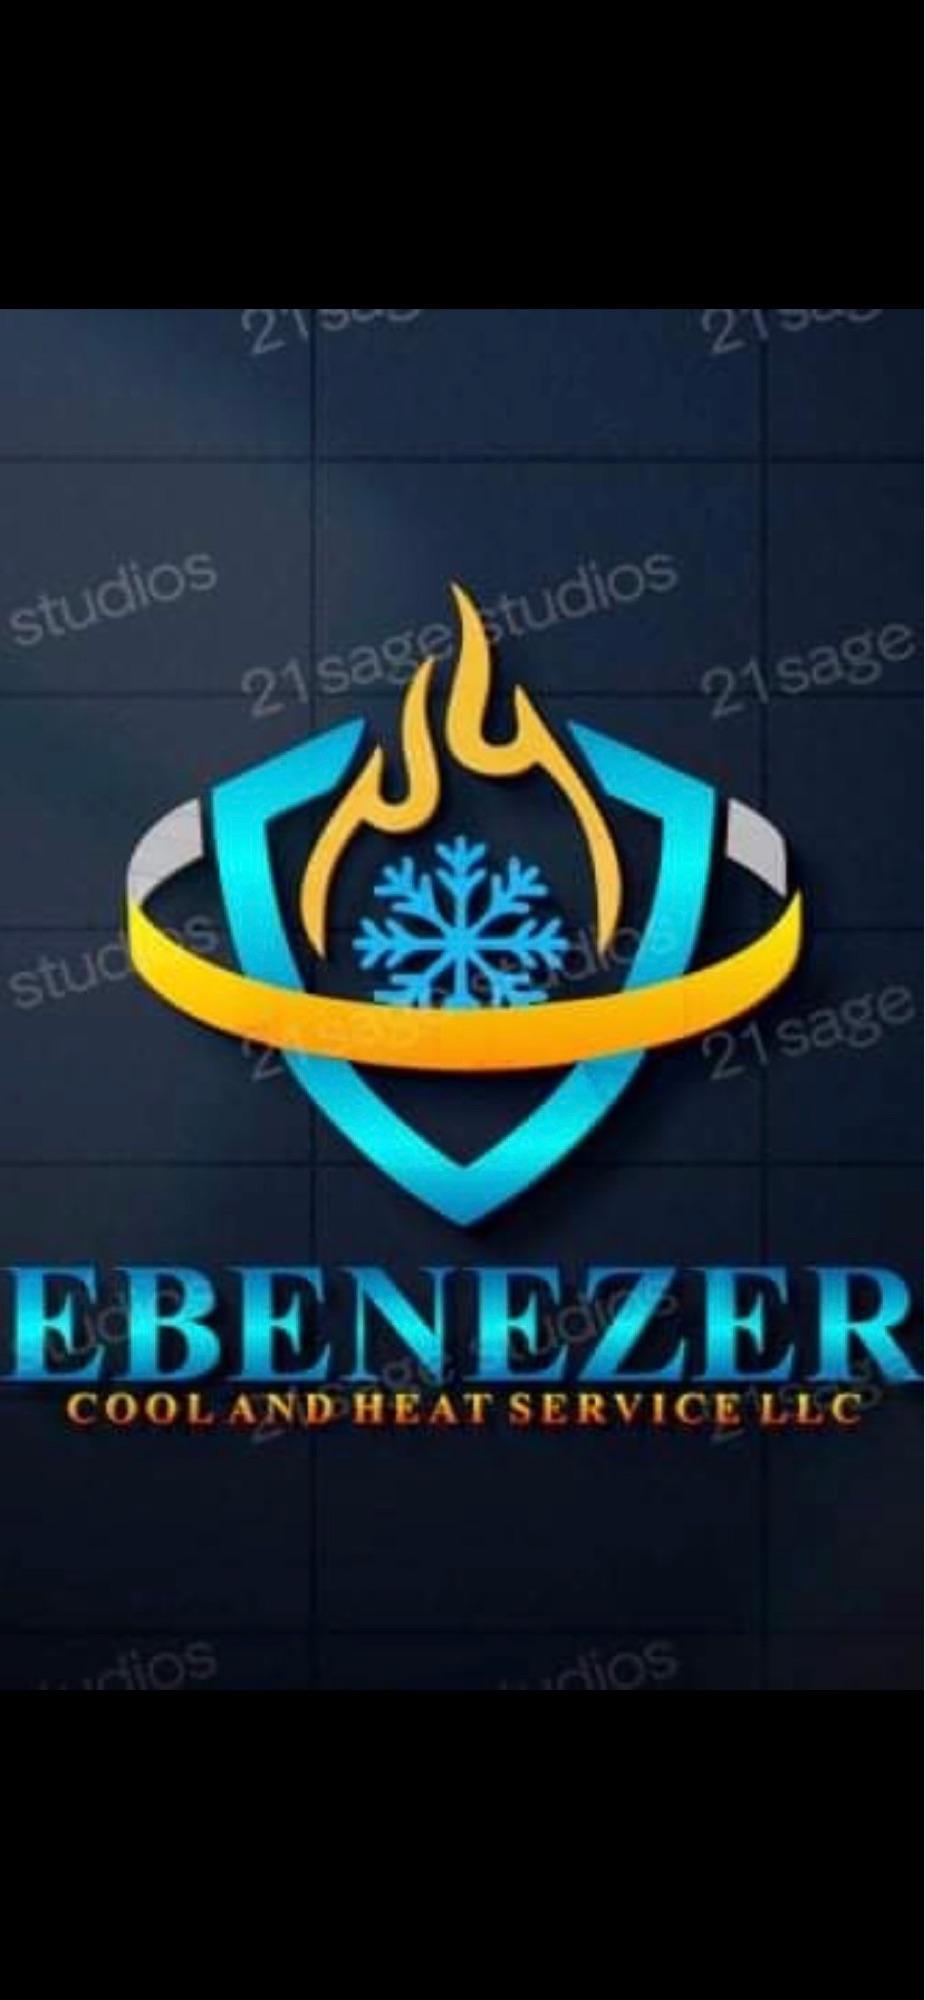 Ebenezer Cool & Heat Services, LLC Logo